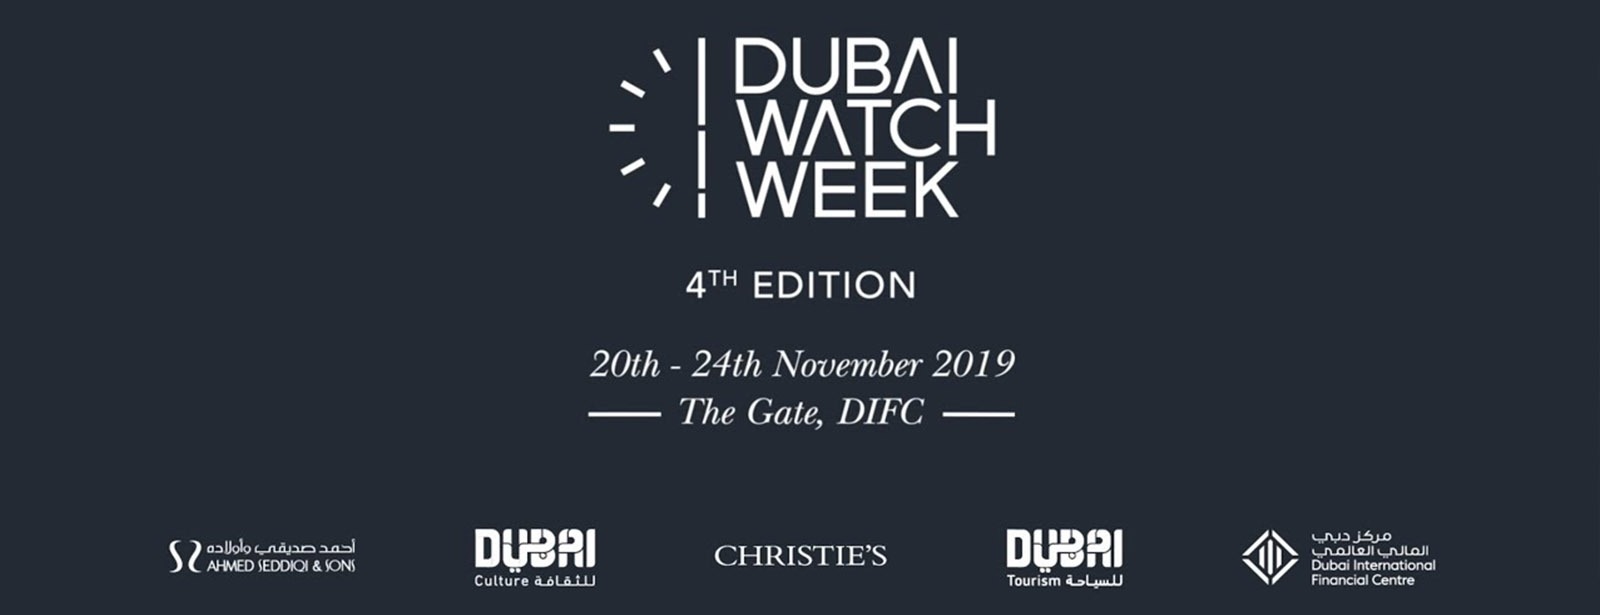 Dubai Watch Week 2019 - Coming Soon in UAE